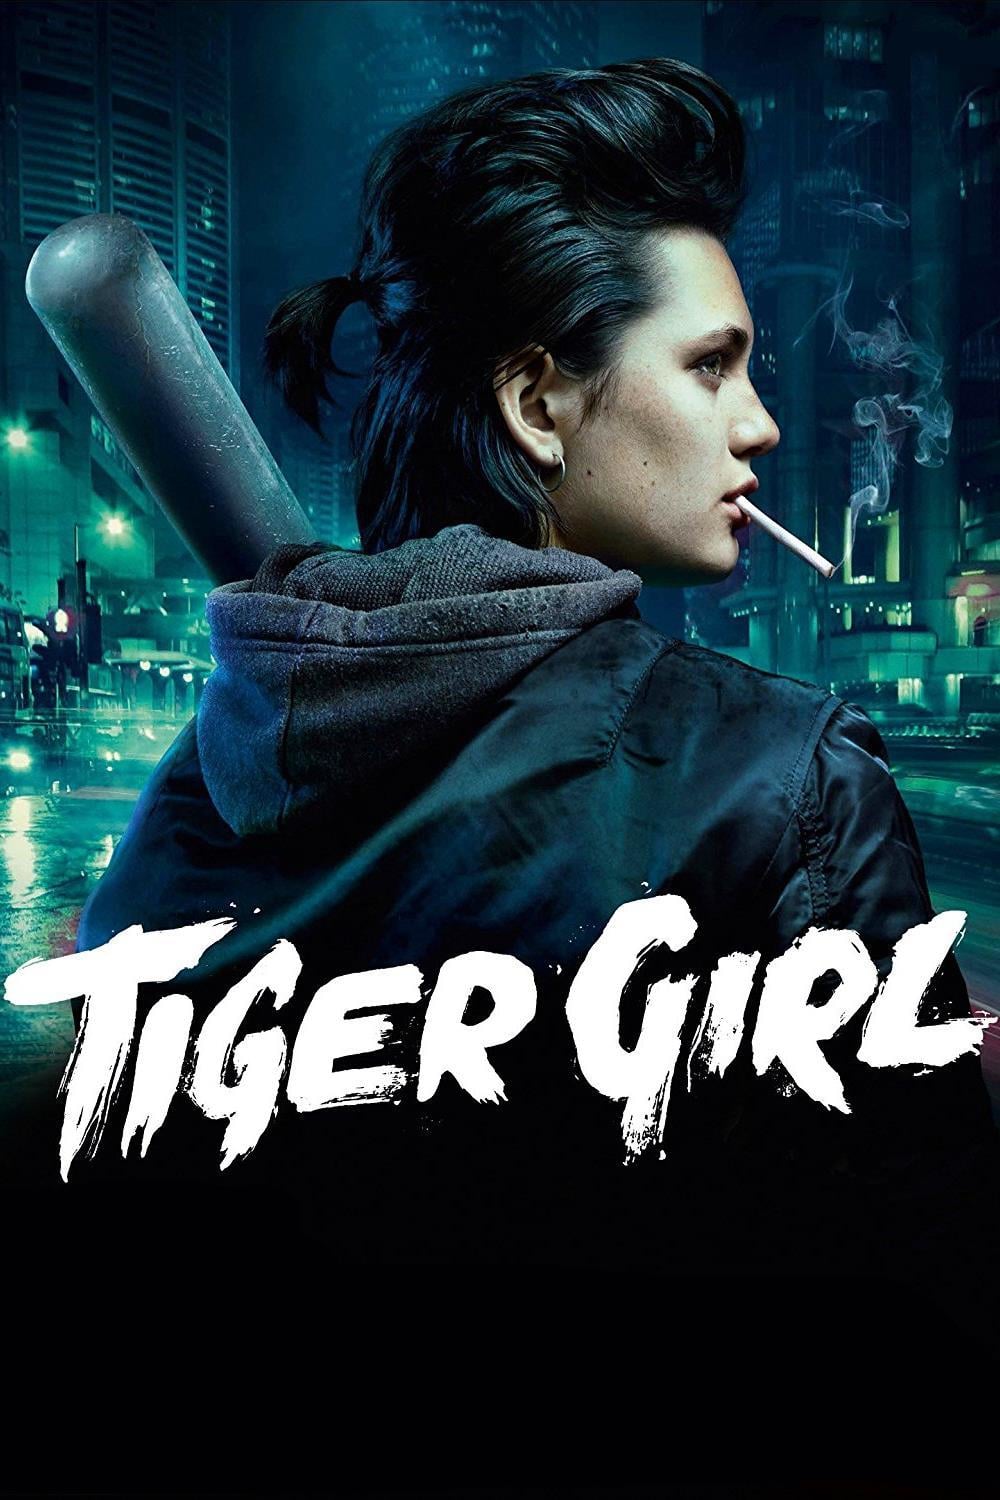 Plakat von "Tiger Girl"